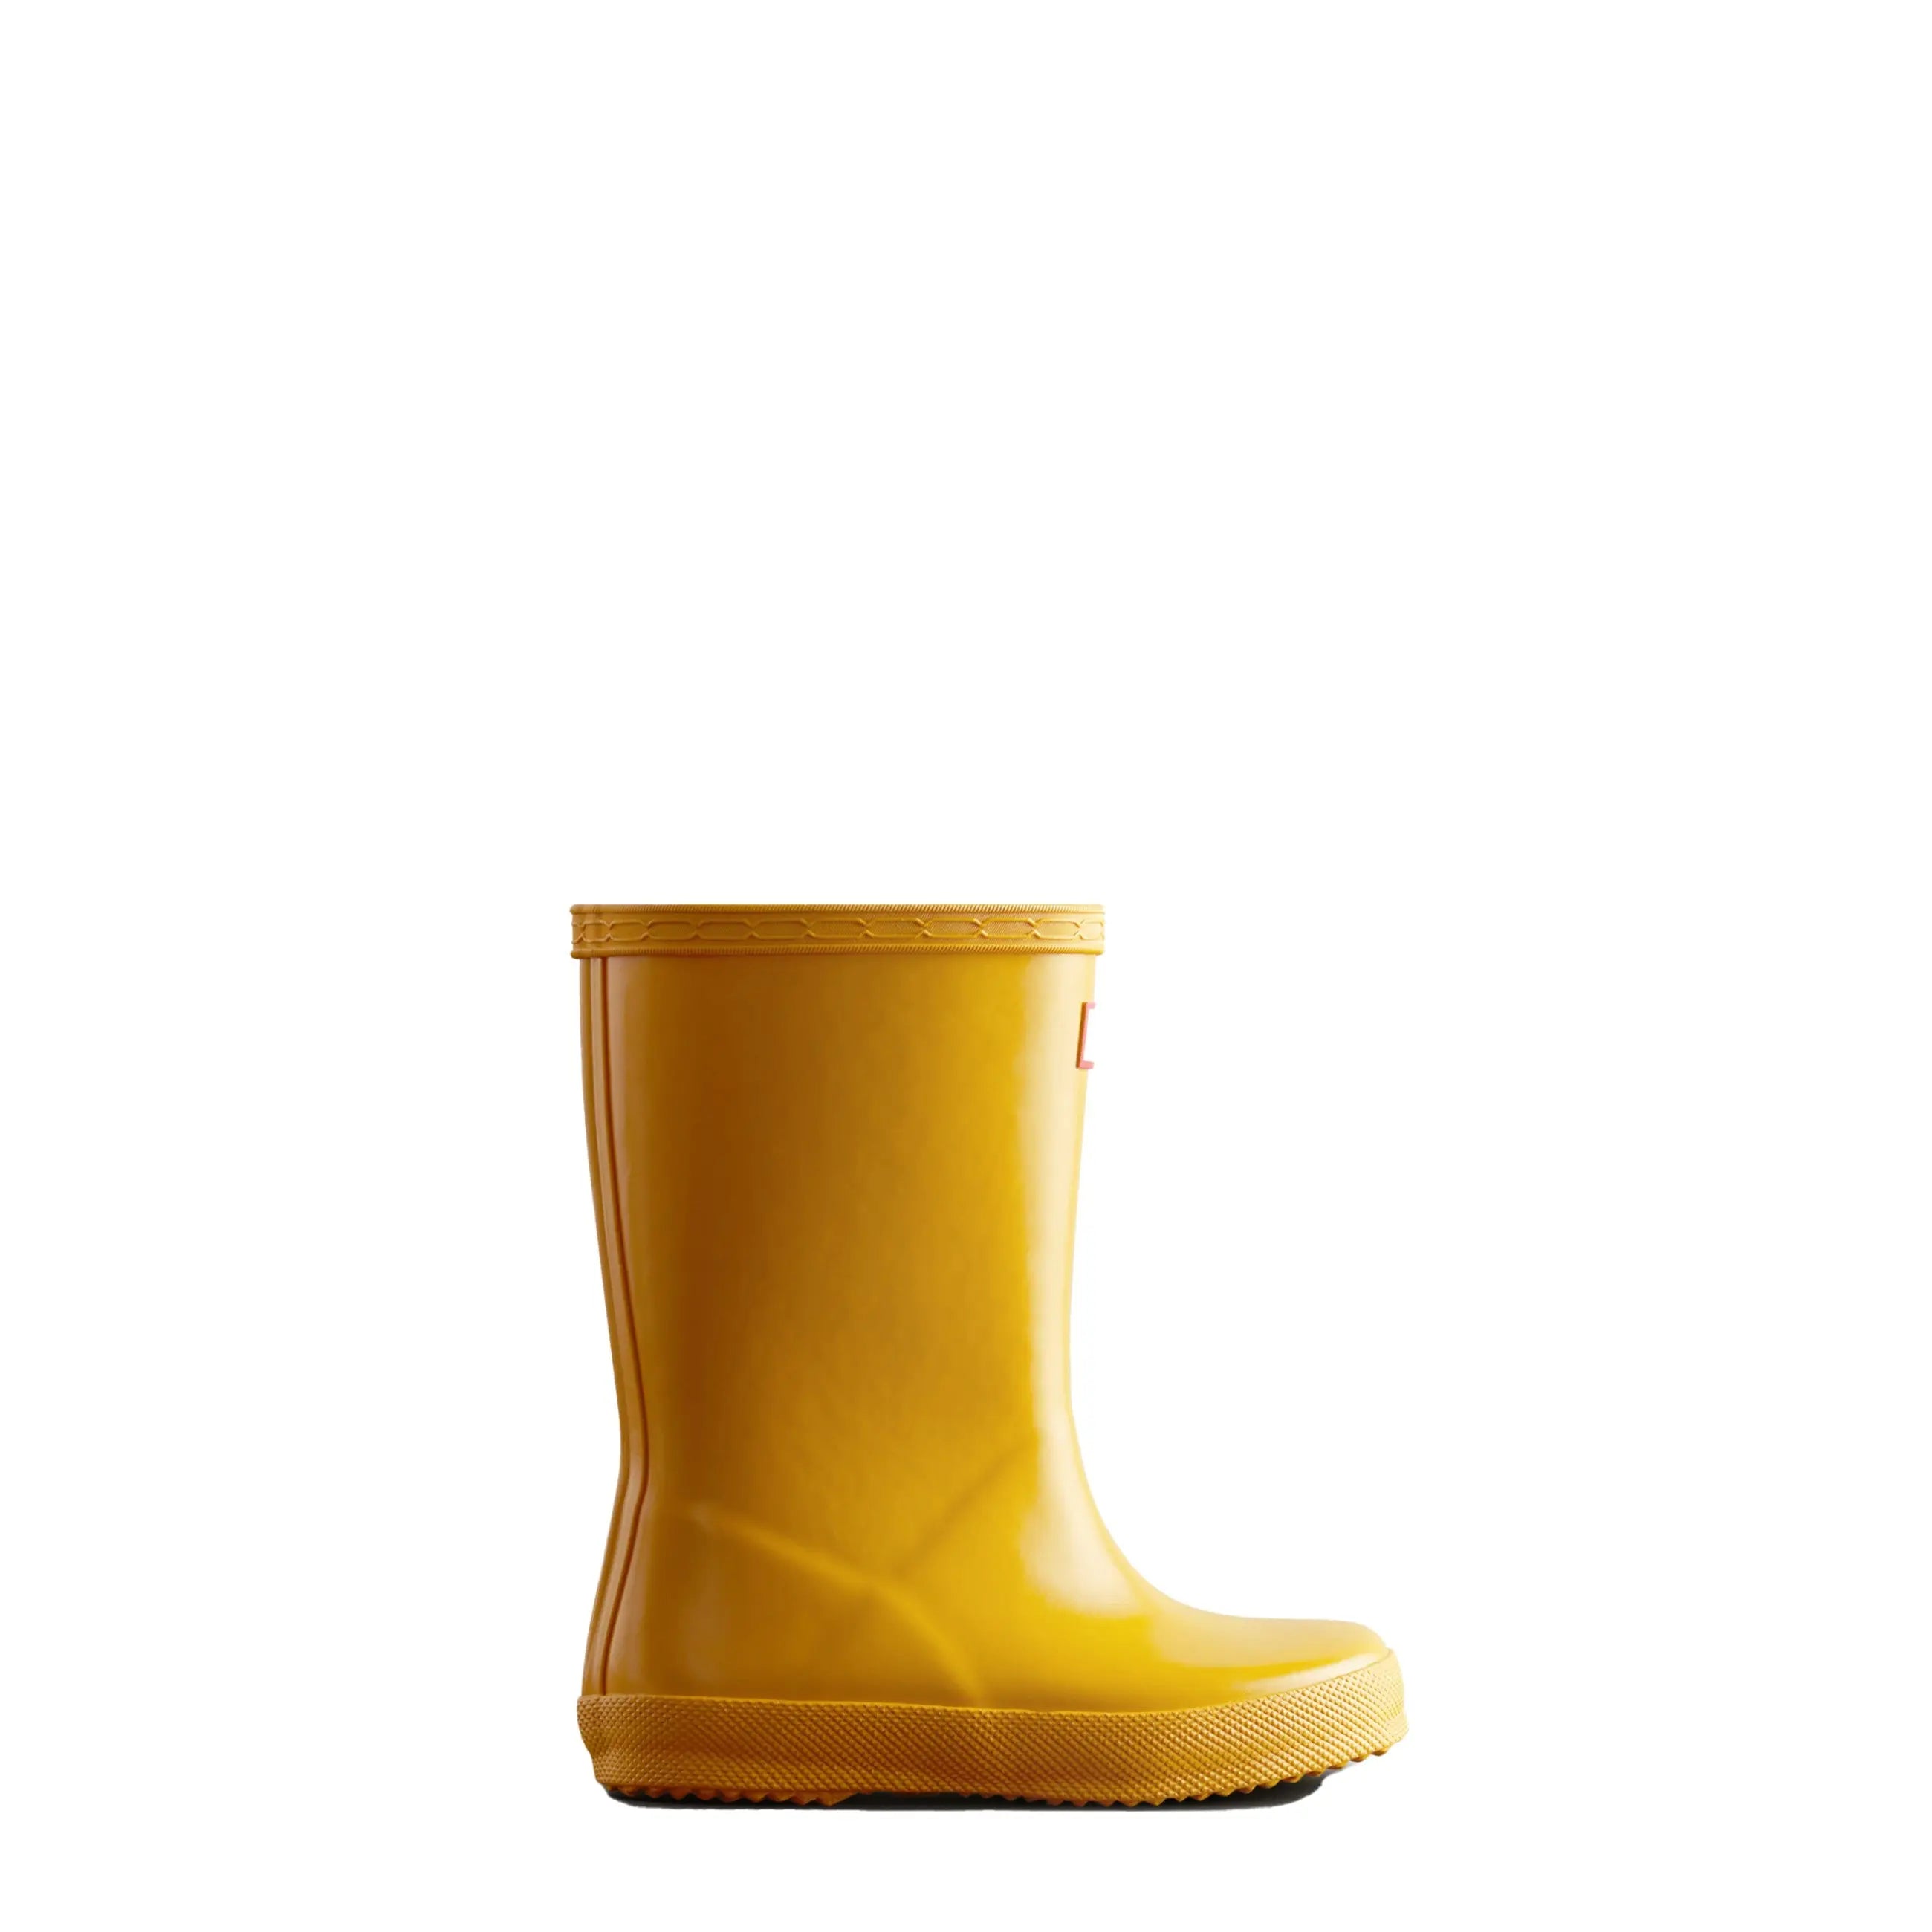 Kids First Gloss Rain Boots - Hunter Boots Kids First Gloss Rain Boots Yellow Hunter Boots Kids First > Rain Boots > Kids First Rain Boots